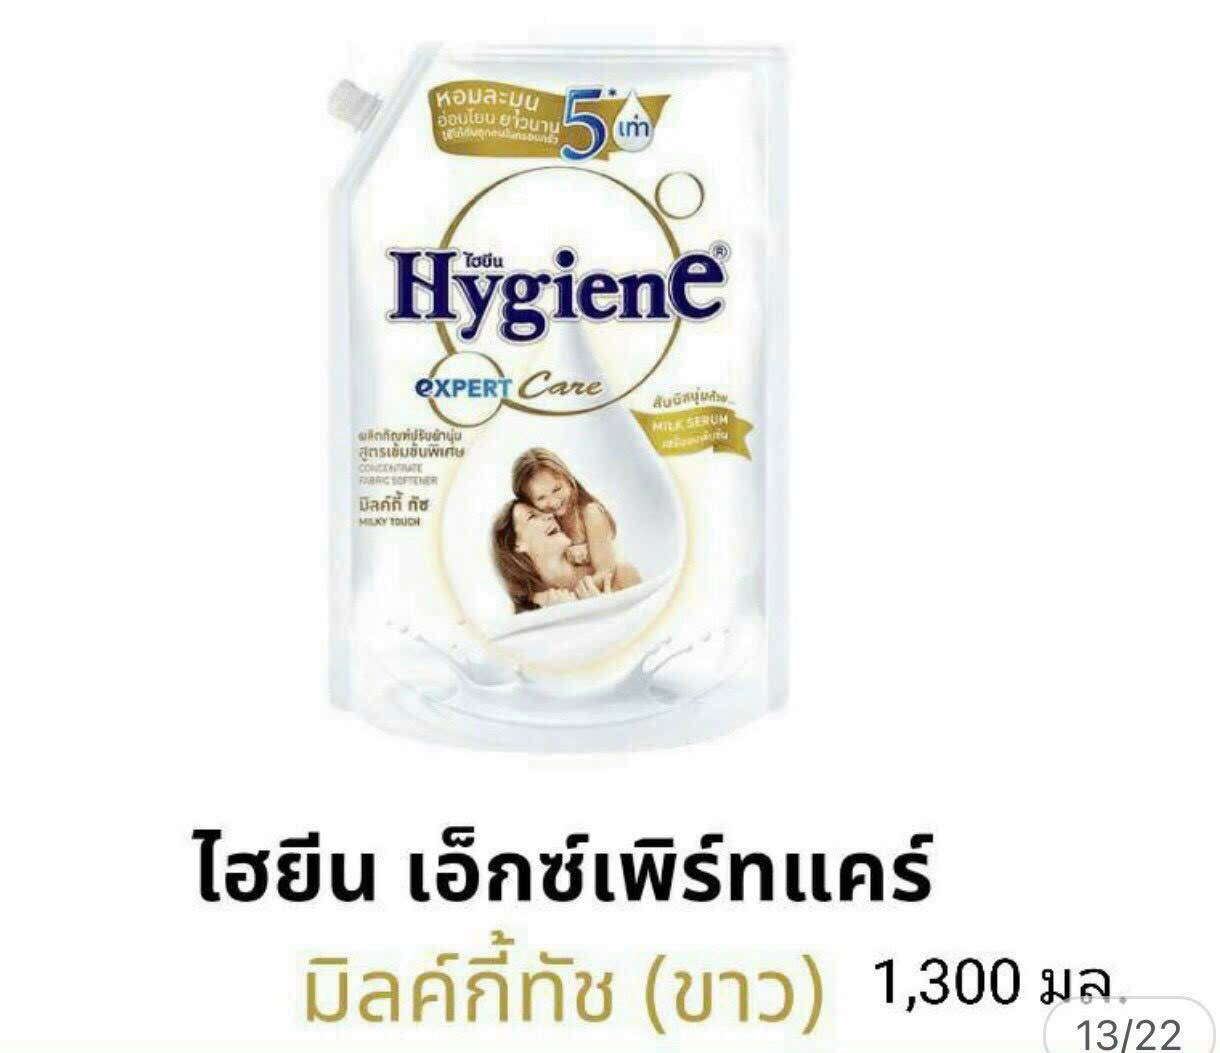 Nước xả vải Hygiene  Thái Lan dành cho da bé yêu 1300l